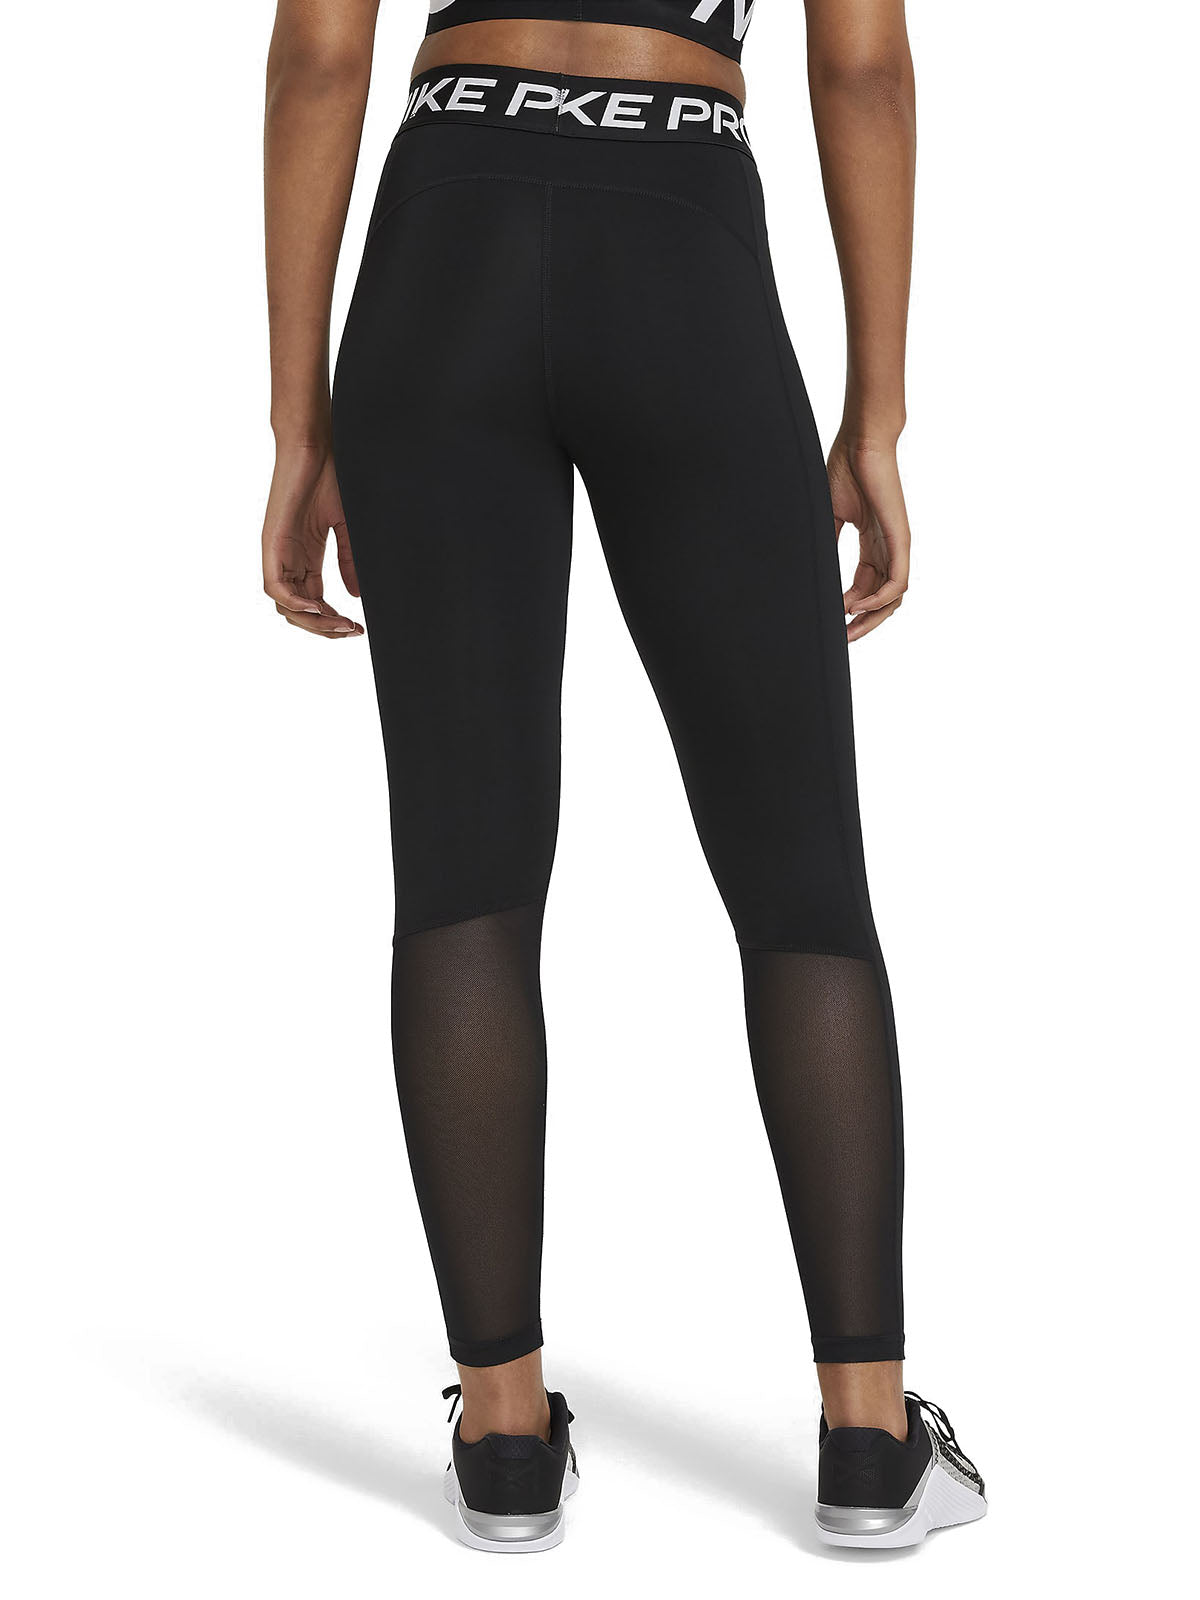 Nike Women's Pants - Nike Pro 365 Tights - Black